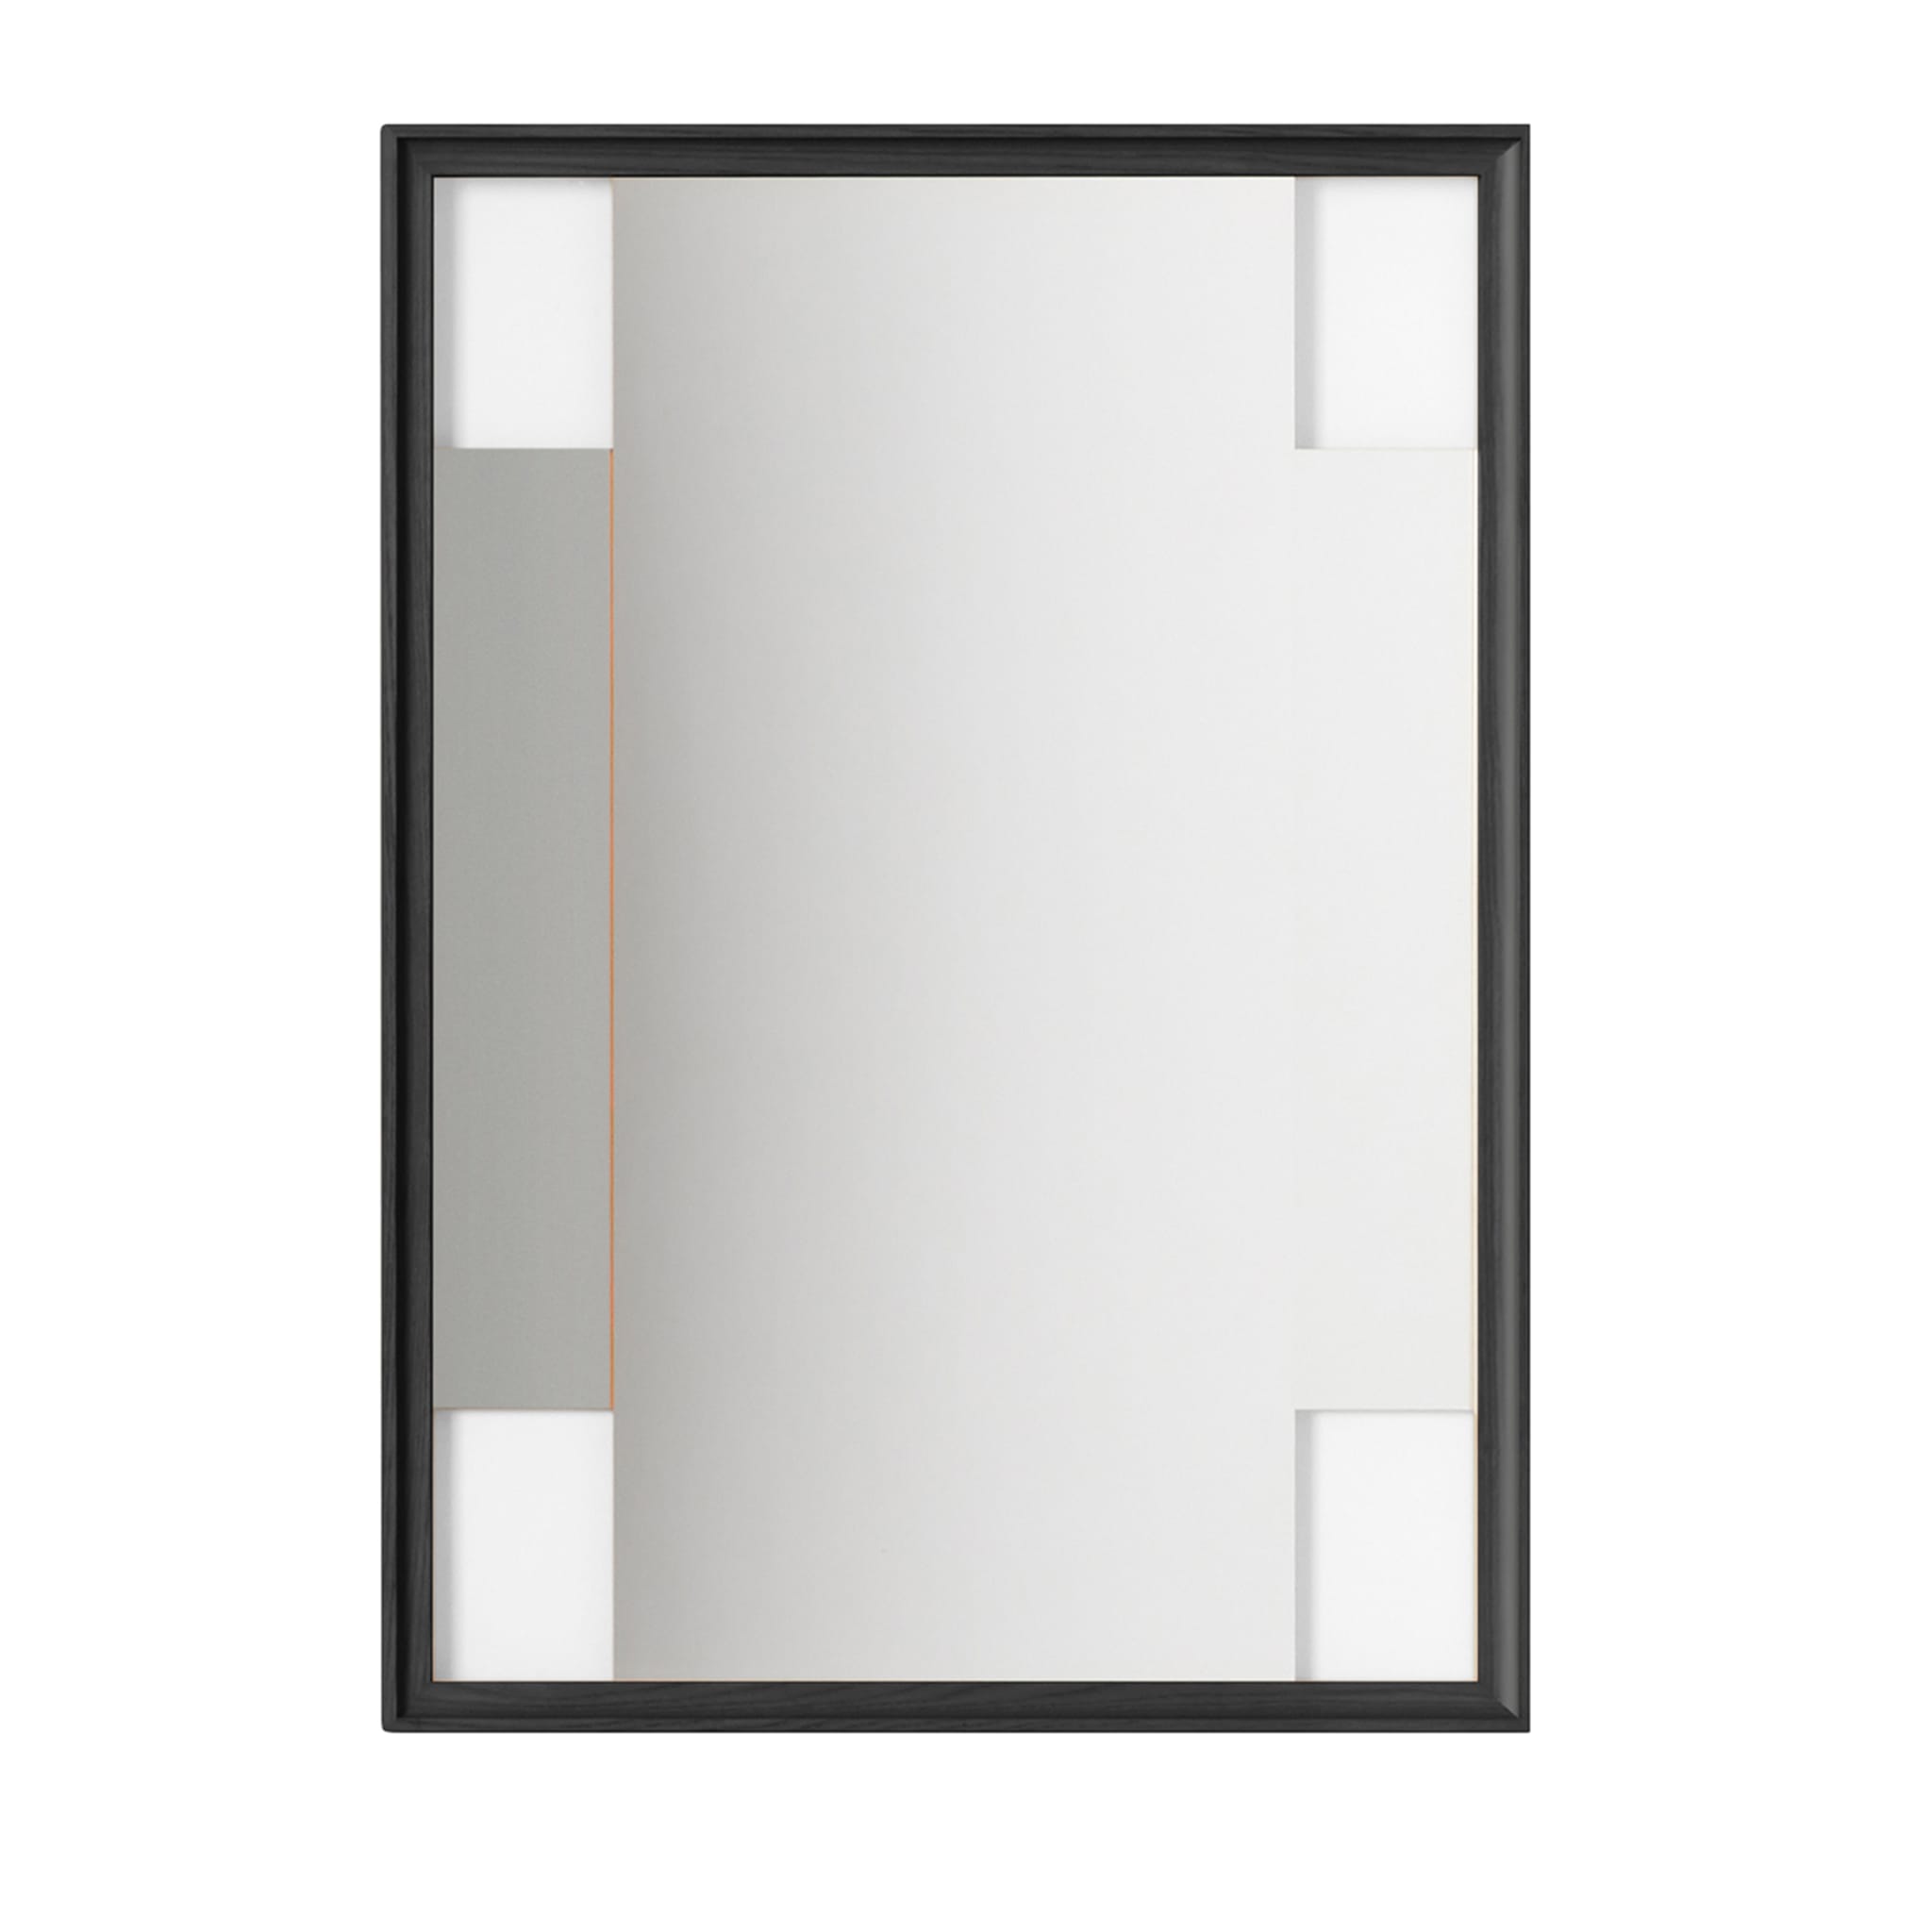 Délai 2 CROSSING PATHS Miroir rectangulaire par Ron Gilad #1 - Vue principale